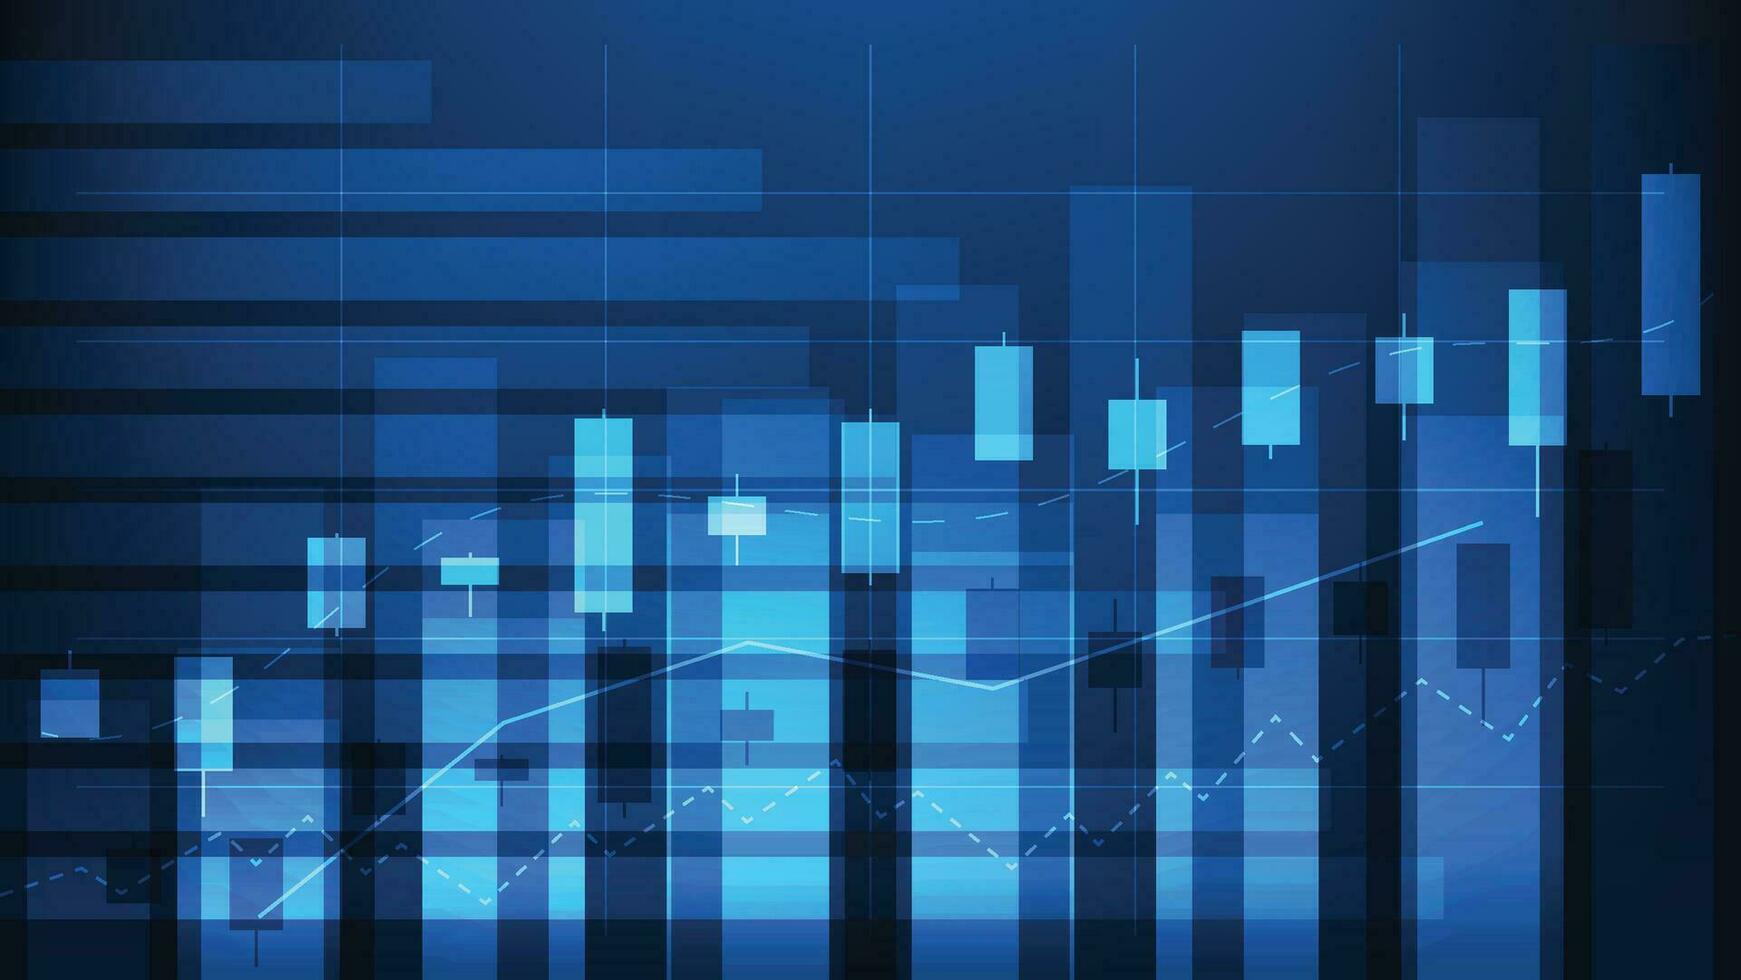 financiero negocio Estadísticas con bar grafico y candelero gráfico espectáculo valores mercado precio en oscuro azul antecedentes vector